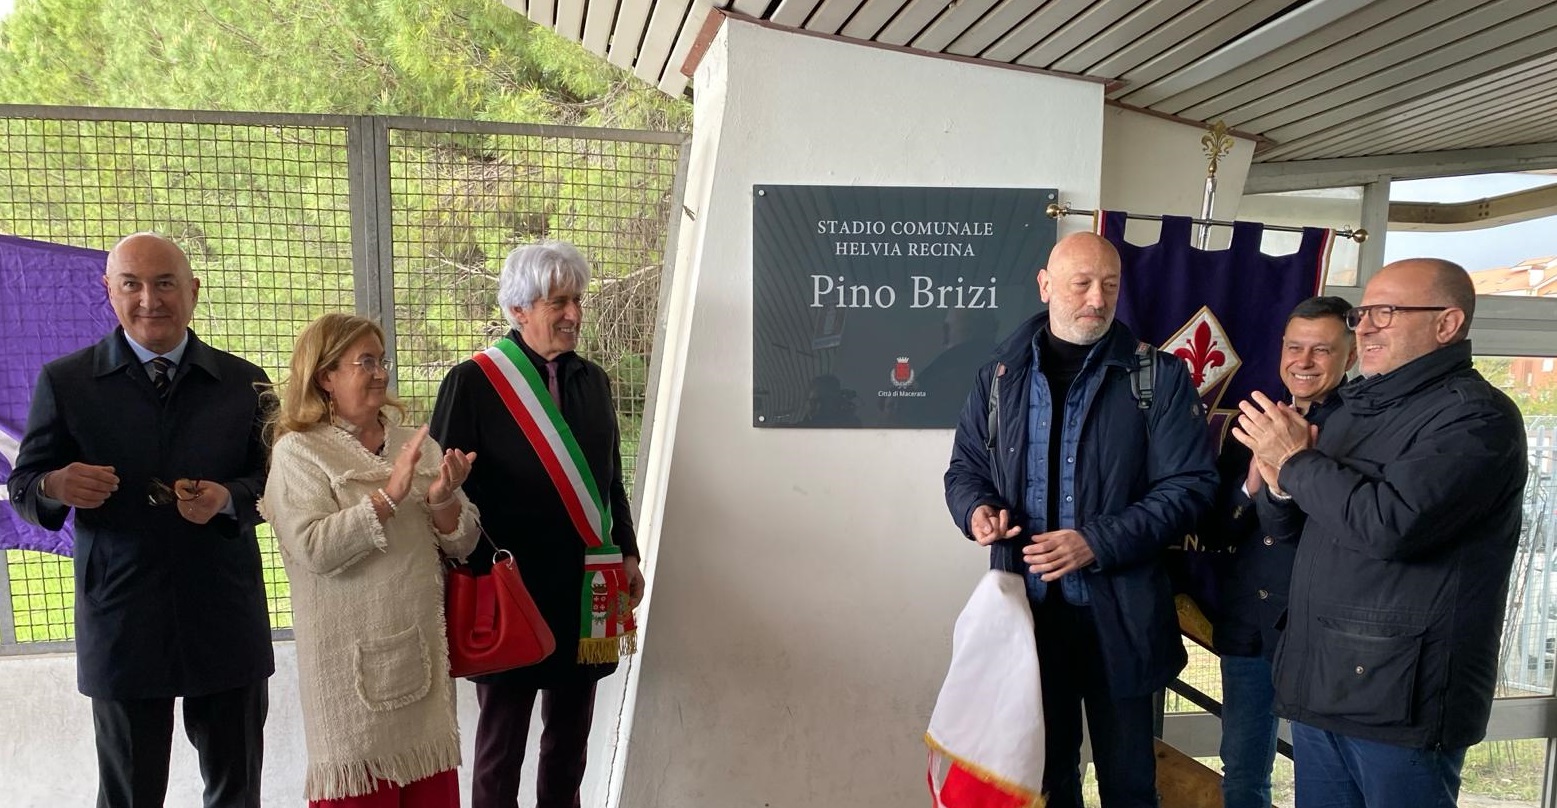 Macerata, lo stadio comunale Helvia Recina intitolato a Pino Brizi